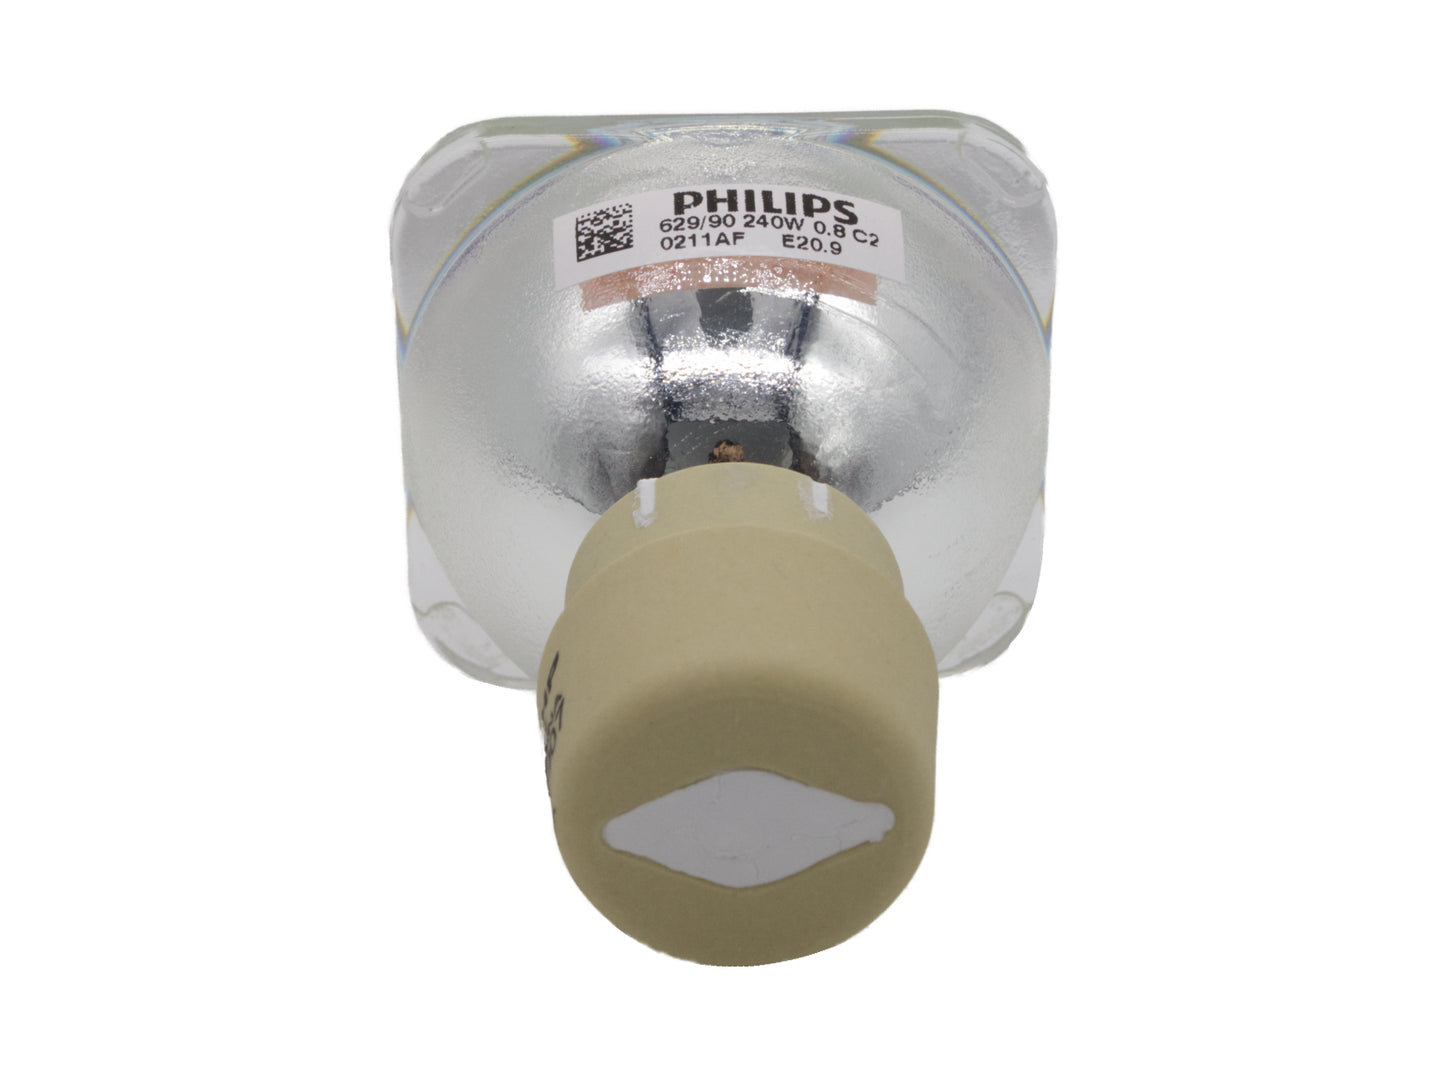 PHILIPS Ersatzlampe UHP 240-190W 0.8 E20.9 | Beamerlampe für diverse Projektoren - Bild 4